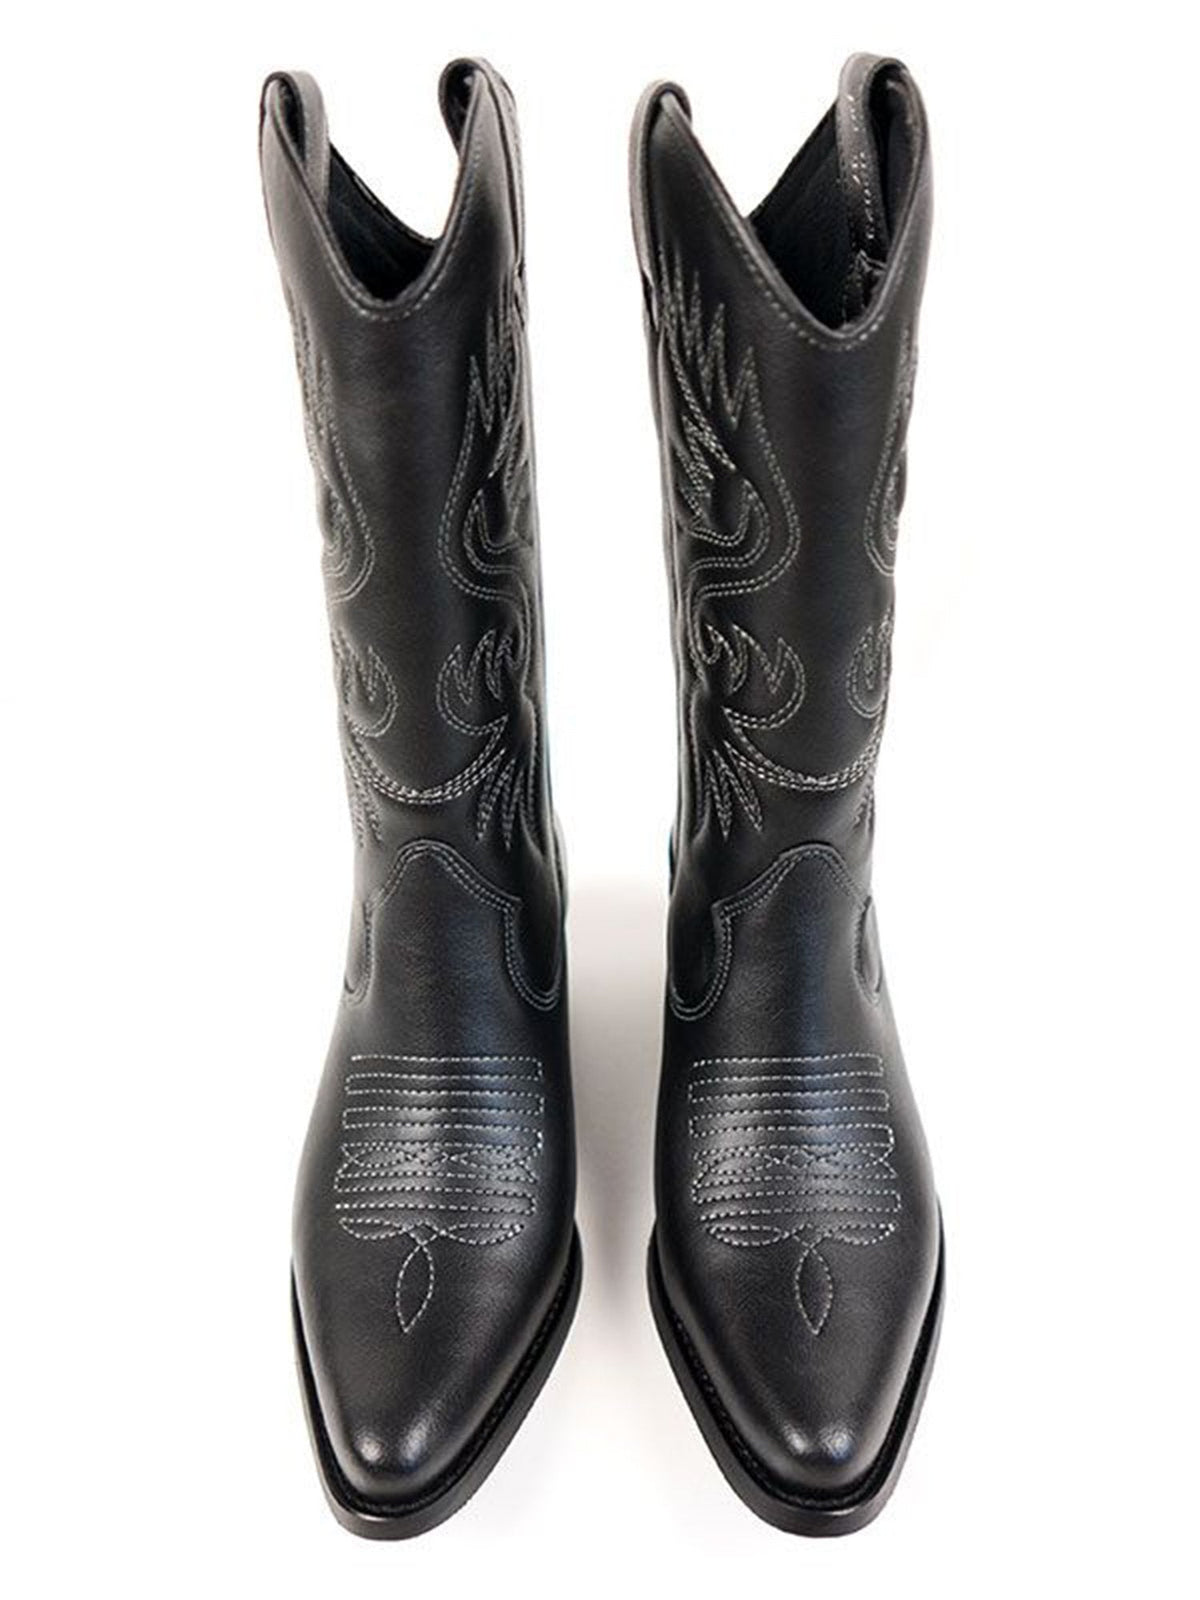 Western Boots Women